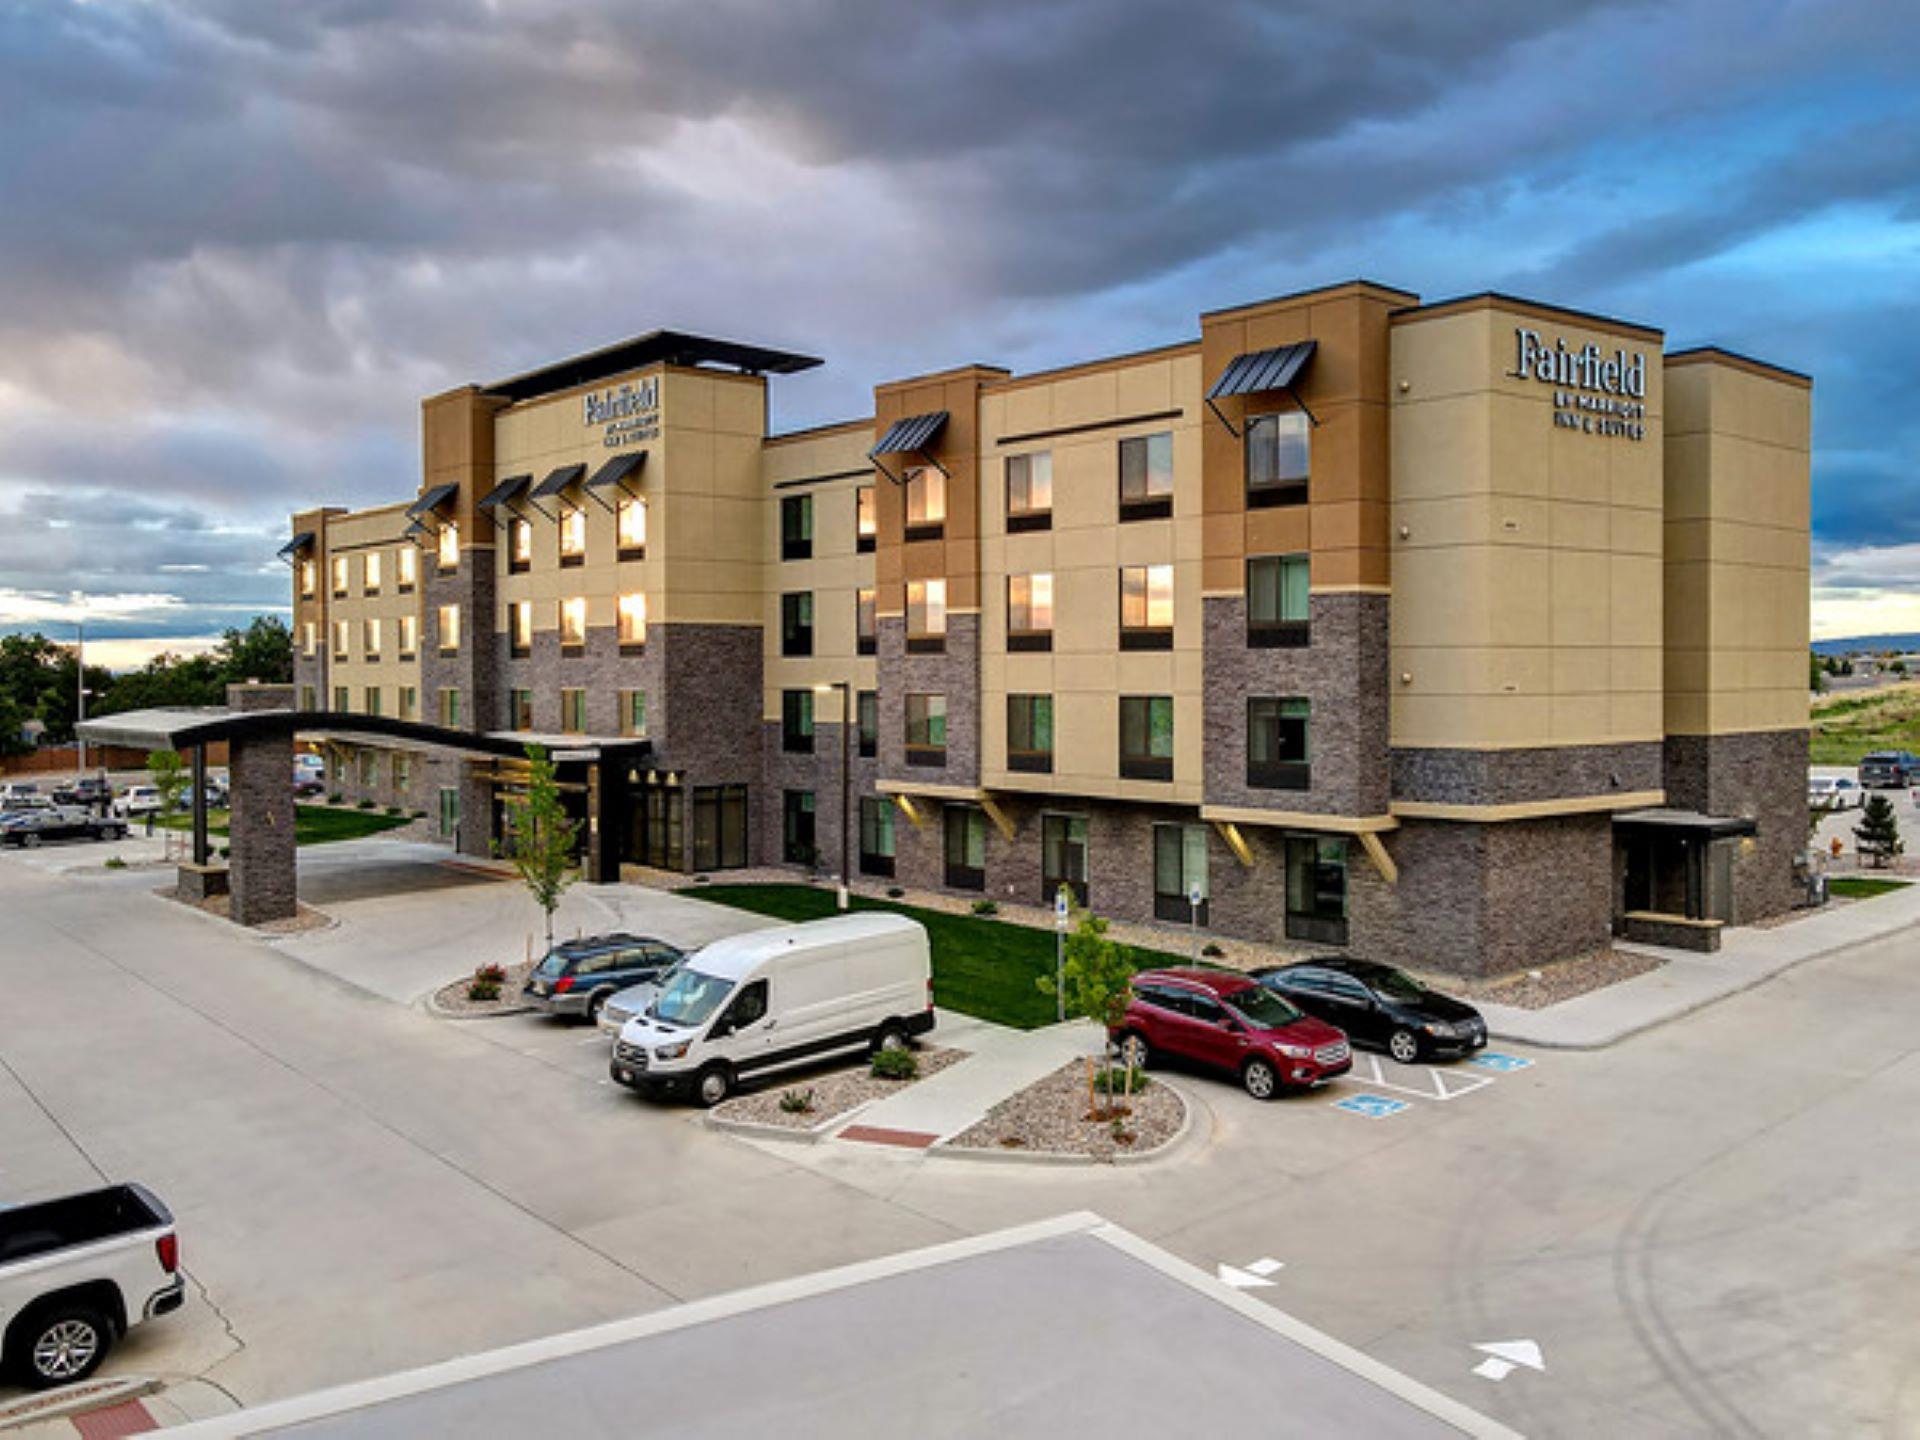 Fairfield Inn & Suites Denver Southwest/Littleton in Littleton, CO